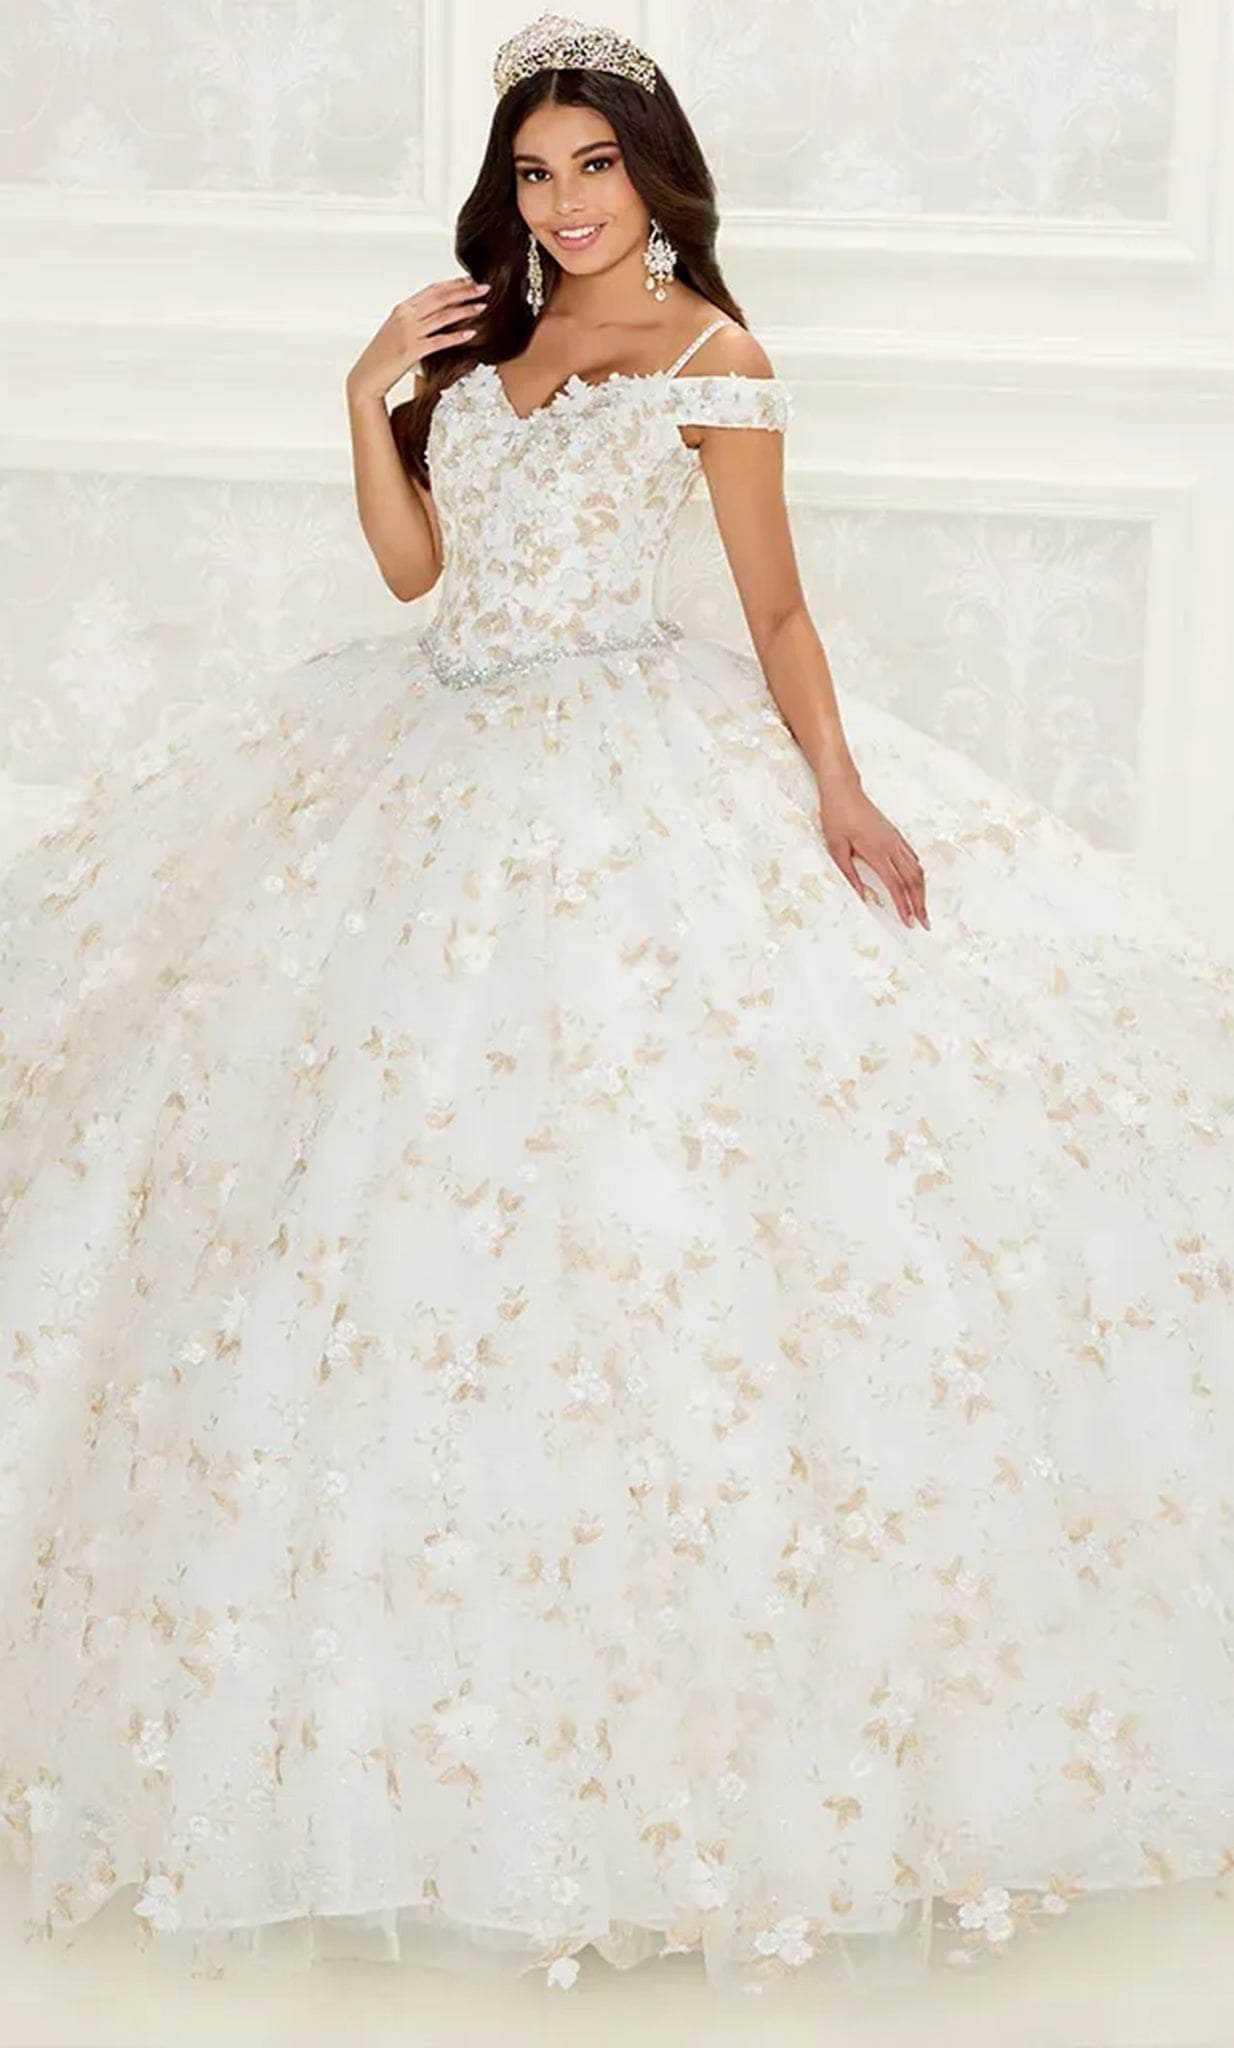 Princesa by Ariana Vara, Princesa by Ariana Vara PR30084 - Blossom Ornate Ballgown